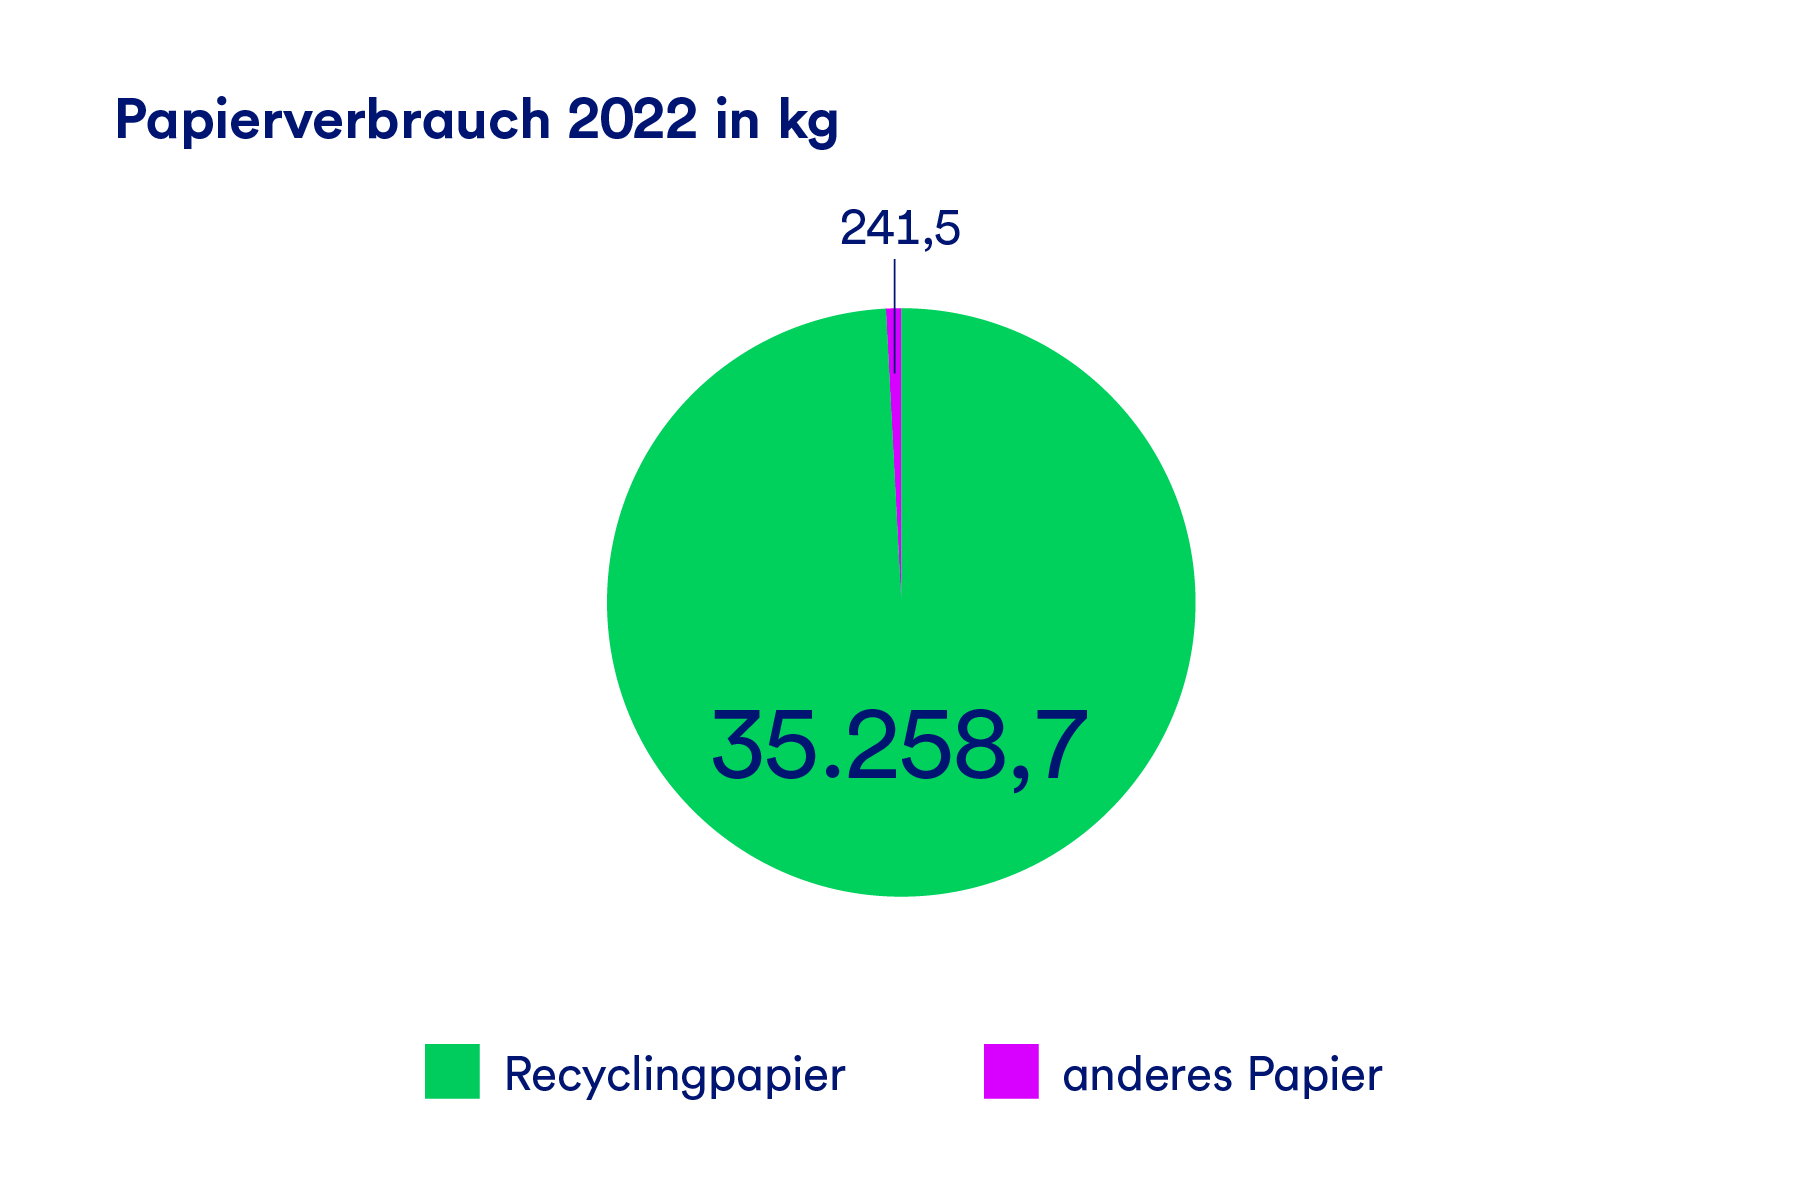 Eine Grafik, die den Papierverbrauch der GLS Bank 2022 in kg darstellt. Der Großteil ist Recyclingpapier, ein schwindend geringer Anteil ist anderes Papier.